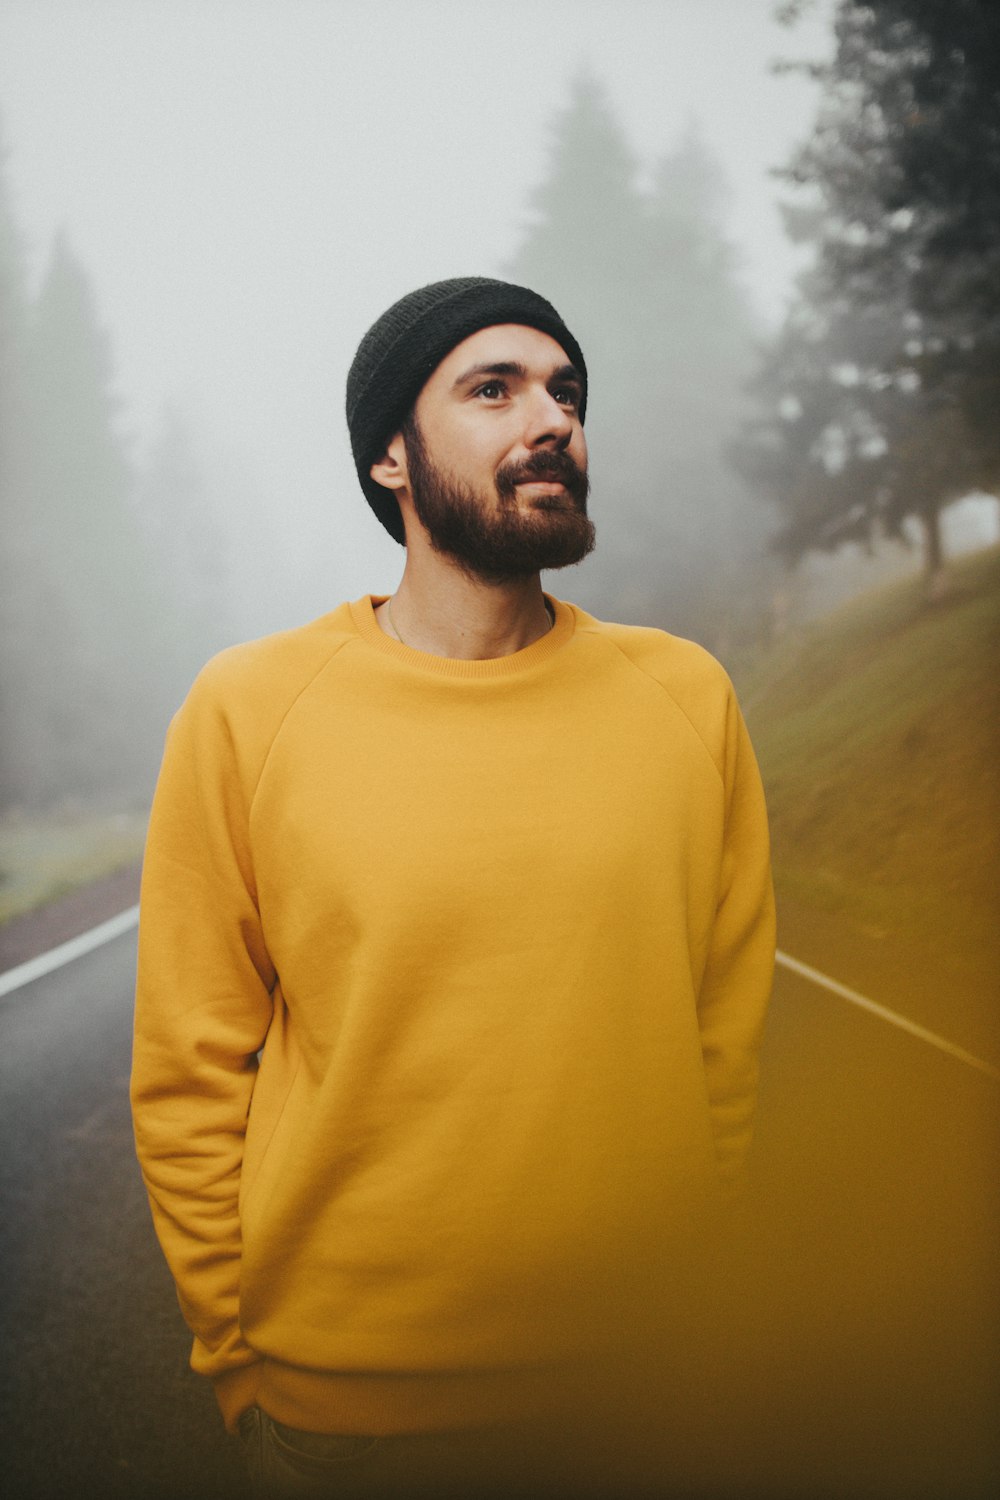 黄色いタートルネックのセーターを着た男が緑の草原のそばに立つ